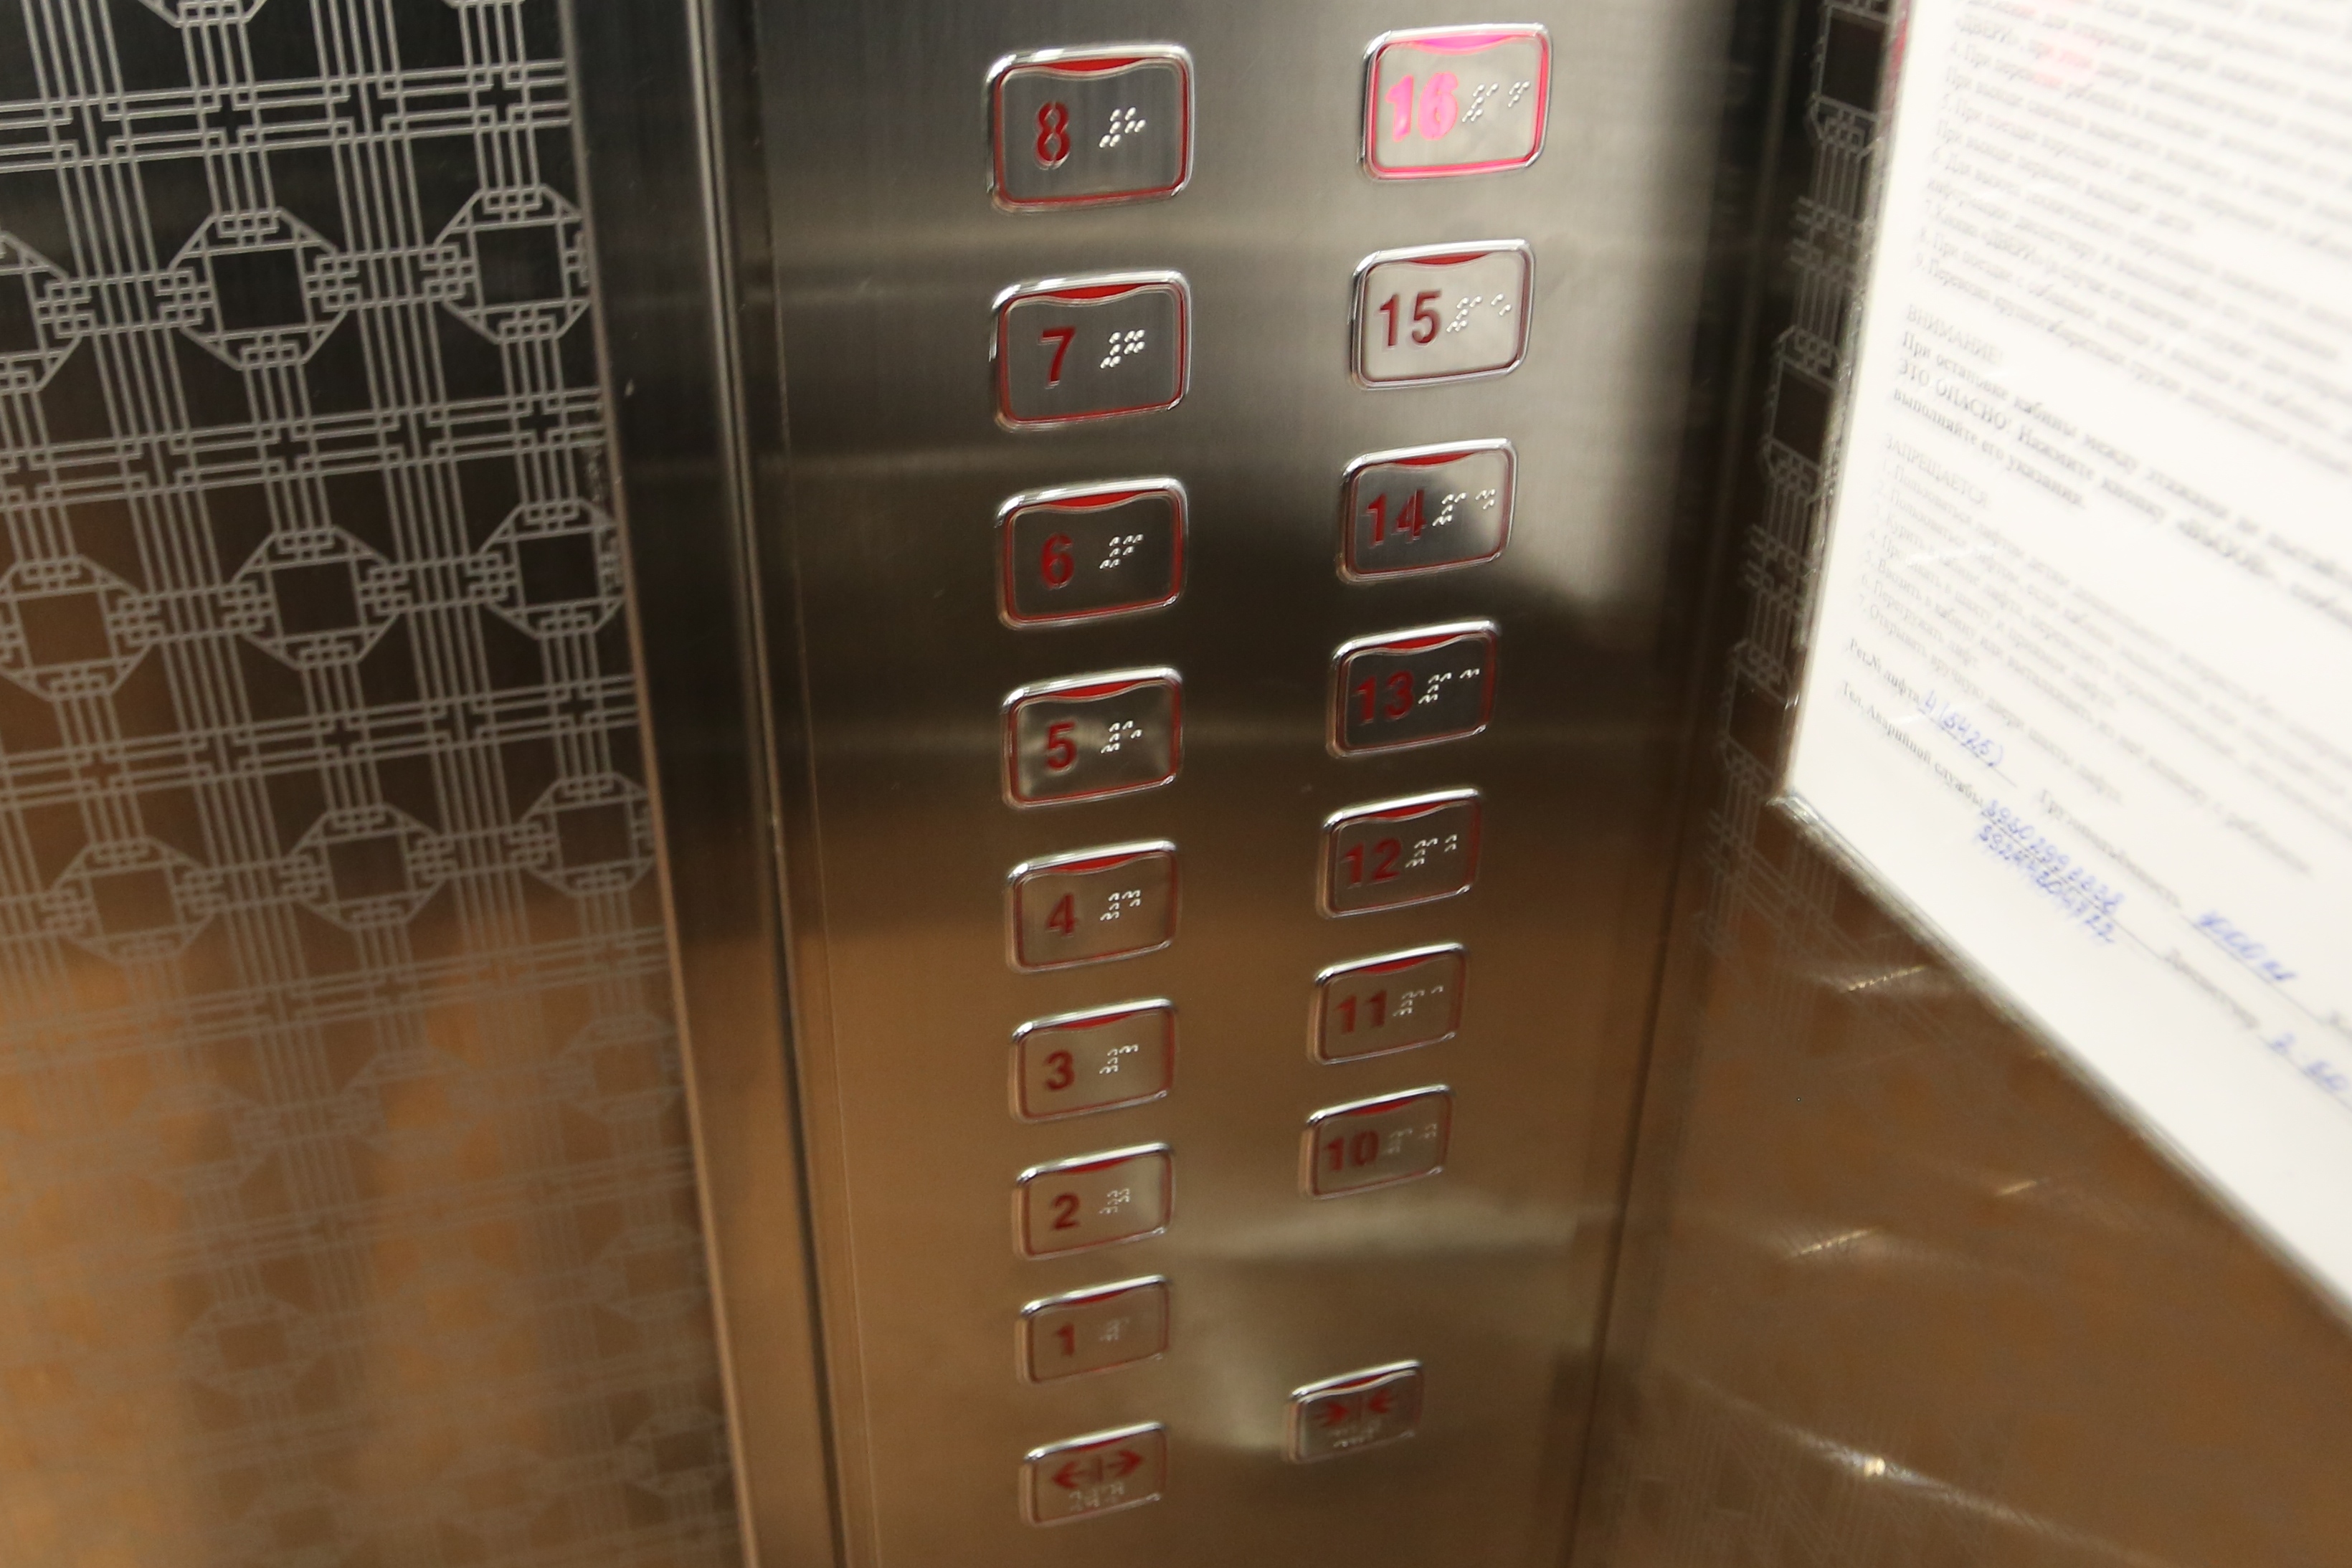 Еще в пяти домах Приморья установлены новые лифты по программе капремонта